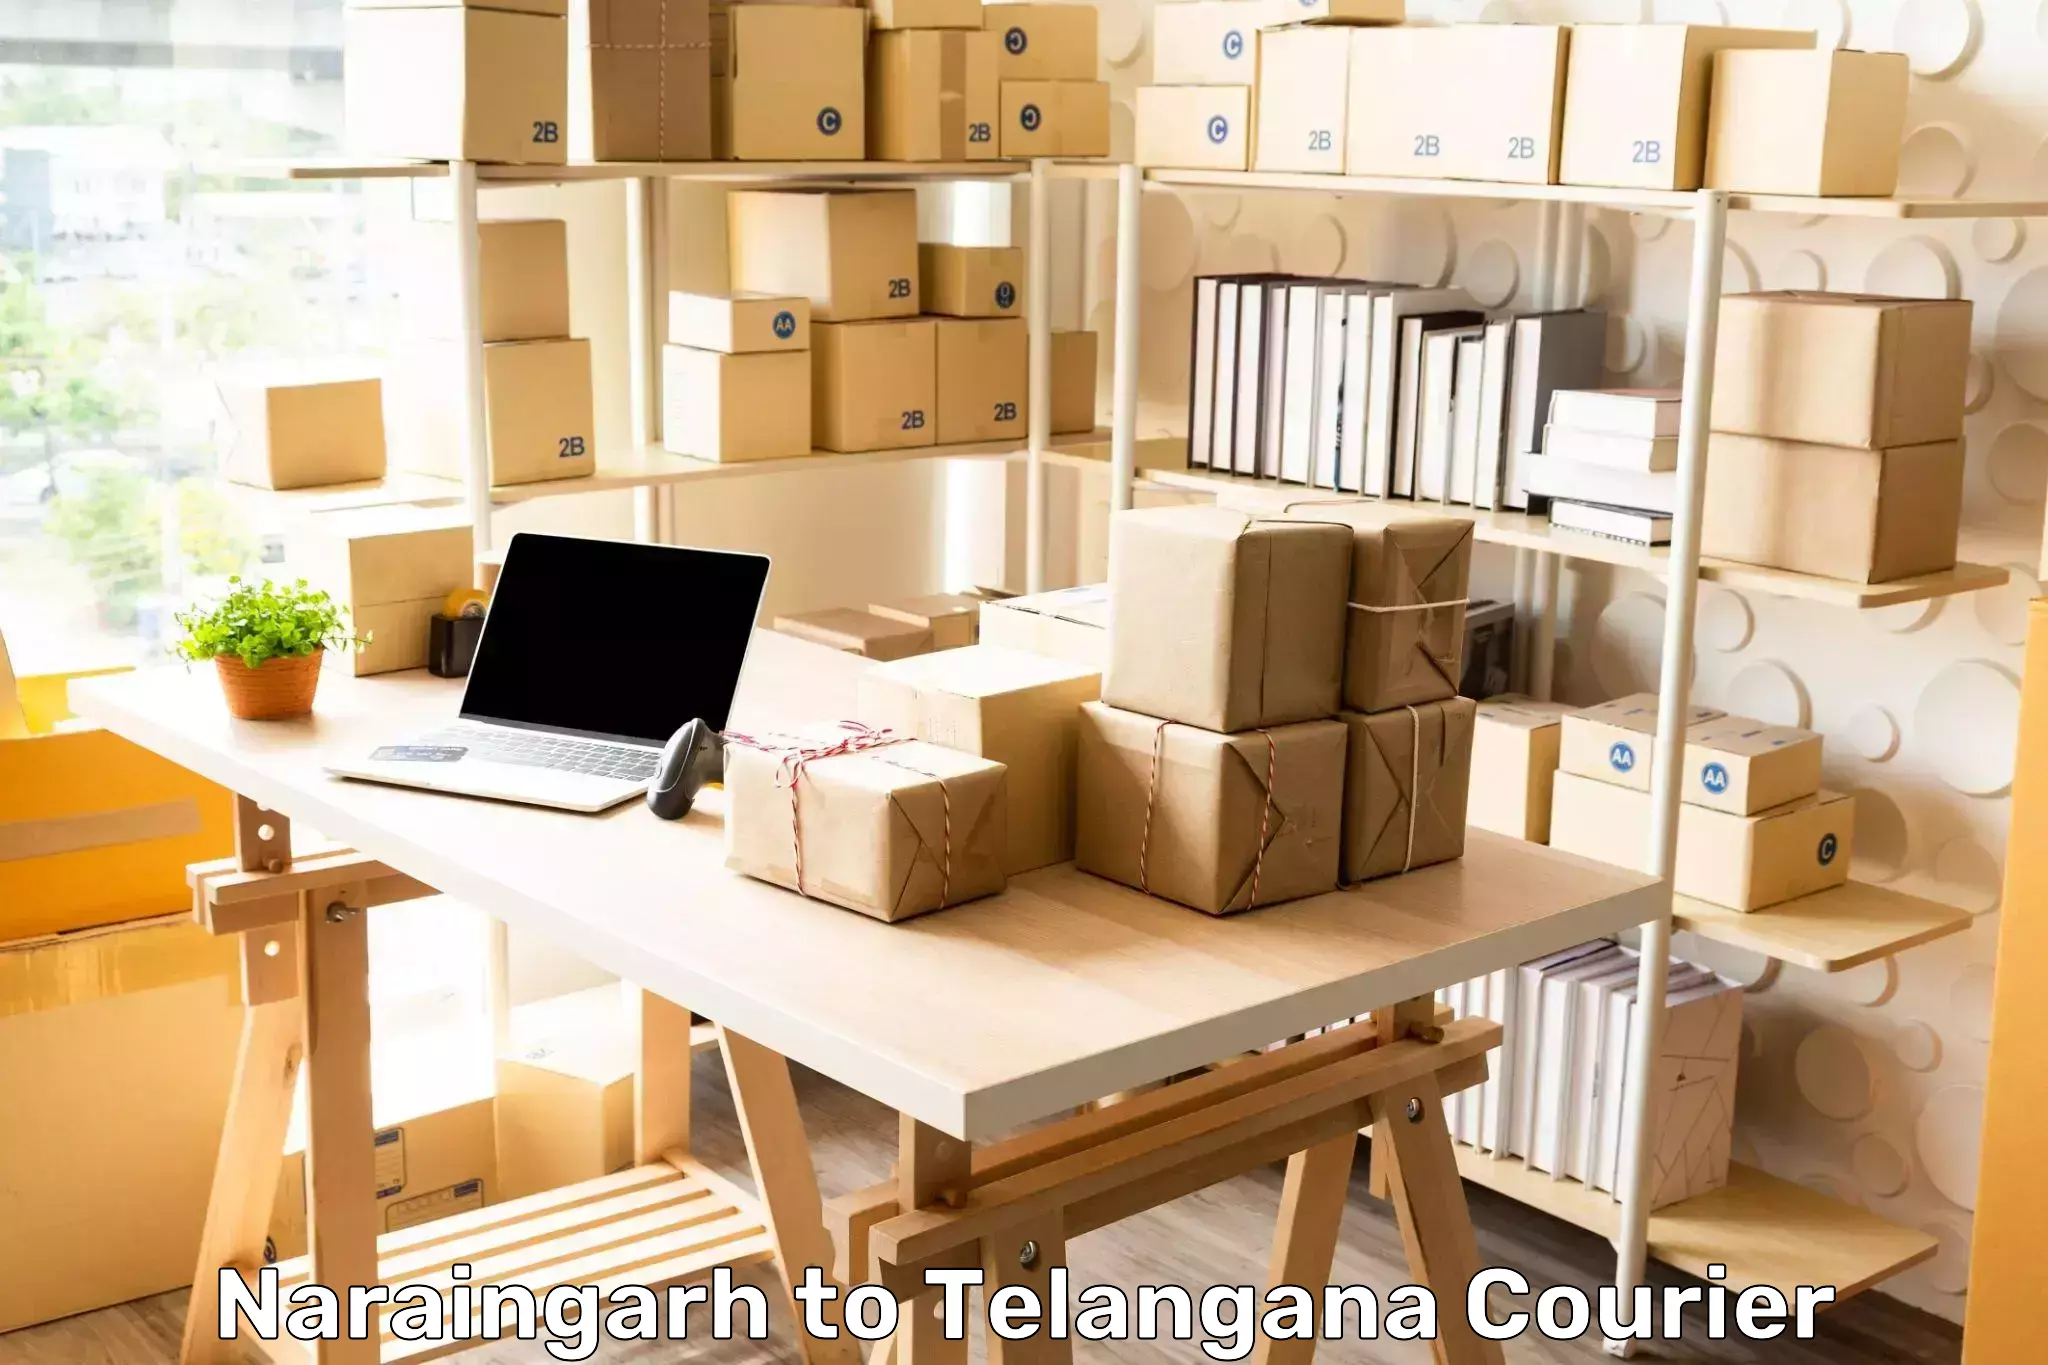 Package tracking Naraingarh to Bhadrachalam